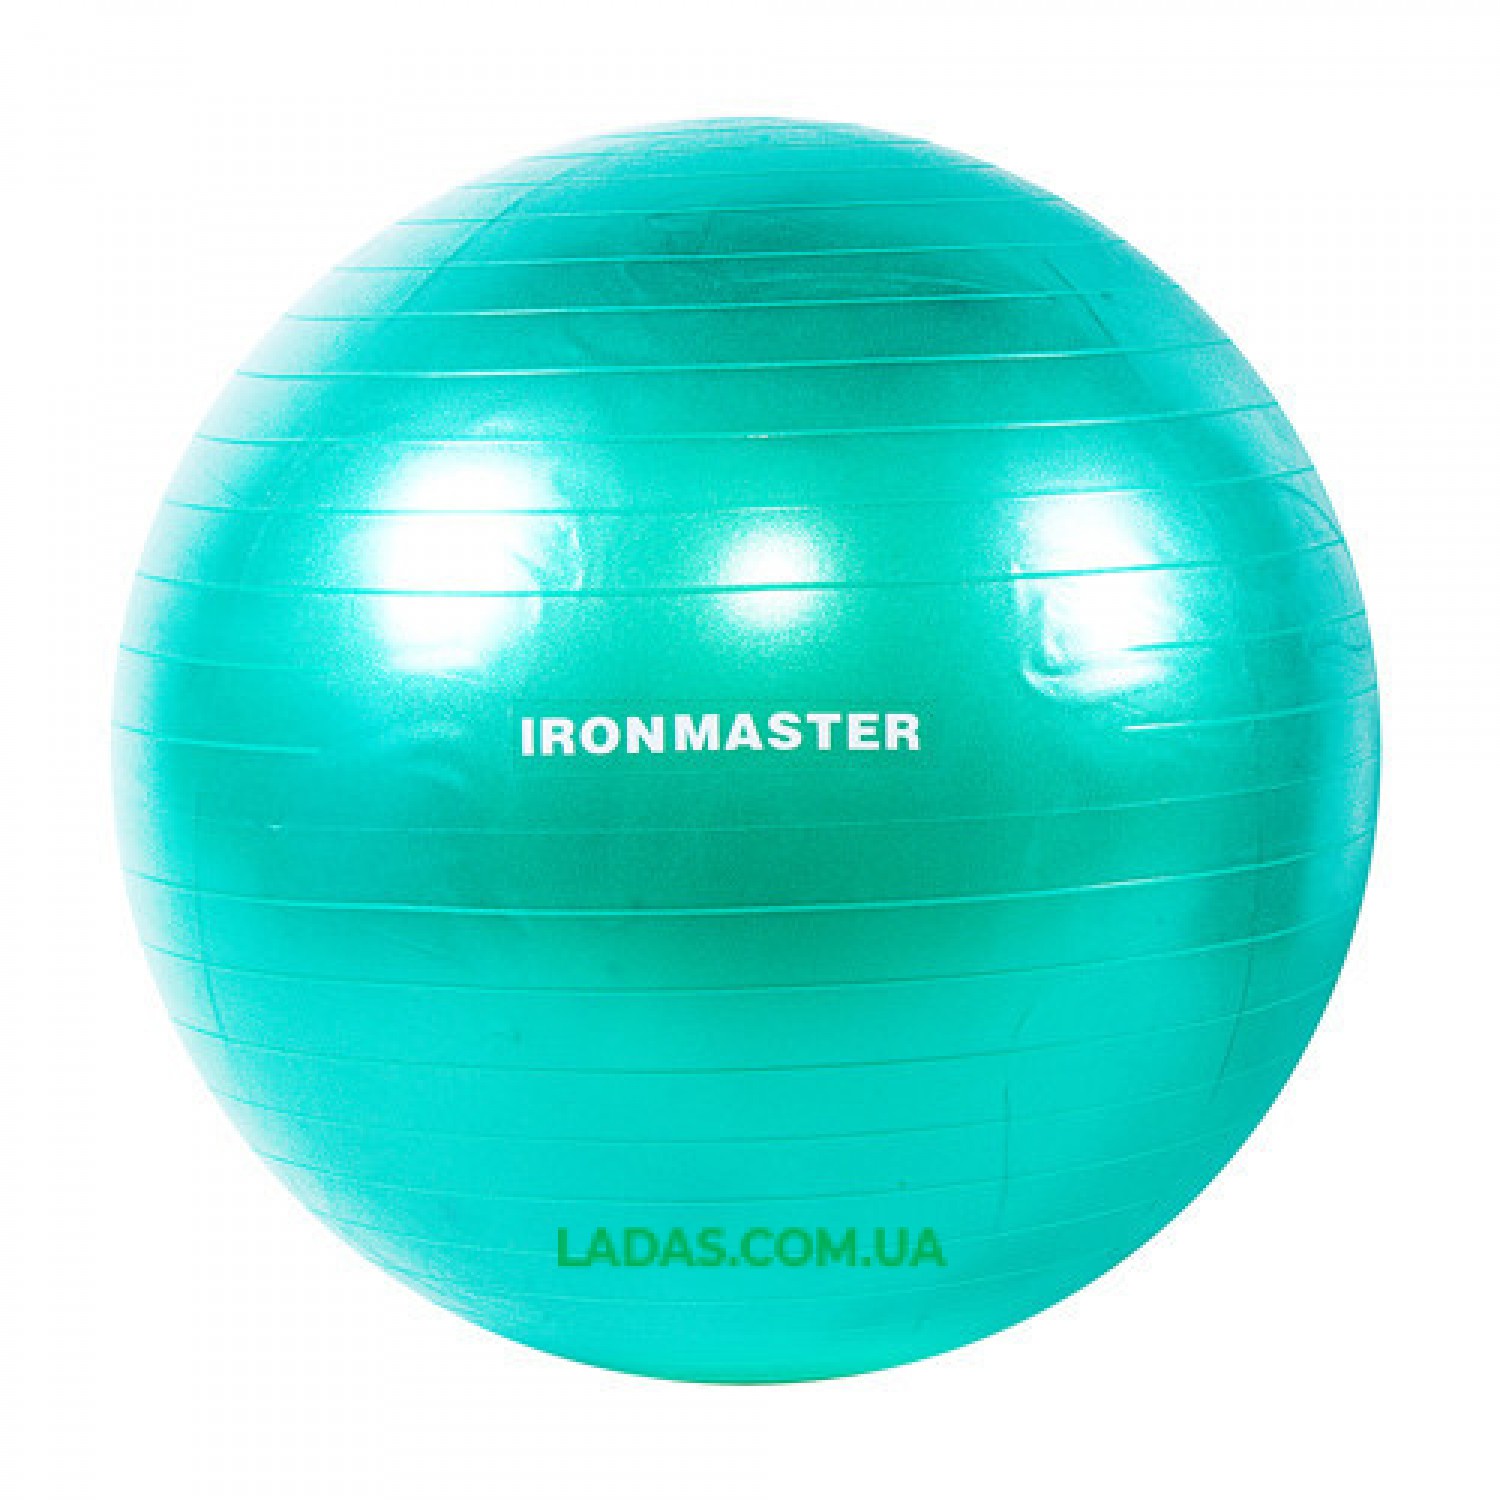 Мяч для фитнеса IronMaster (диаметр 65 см)